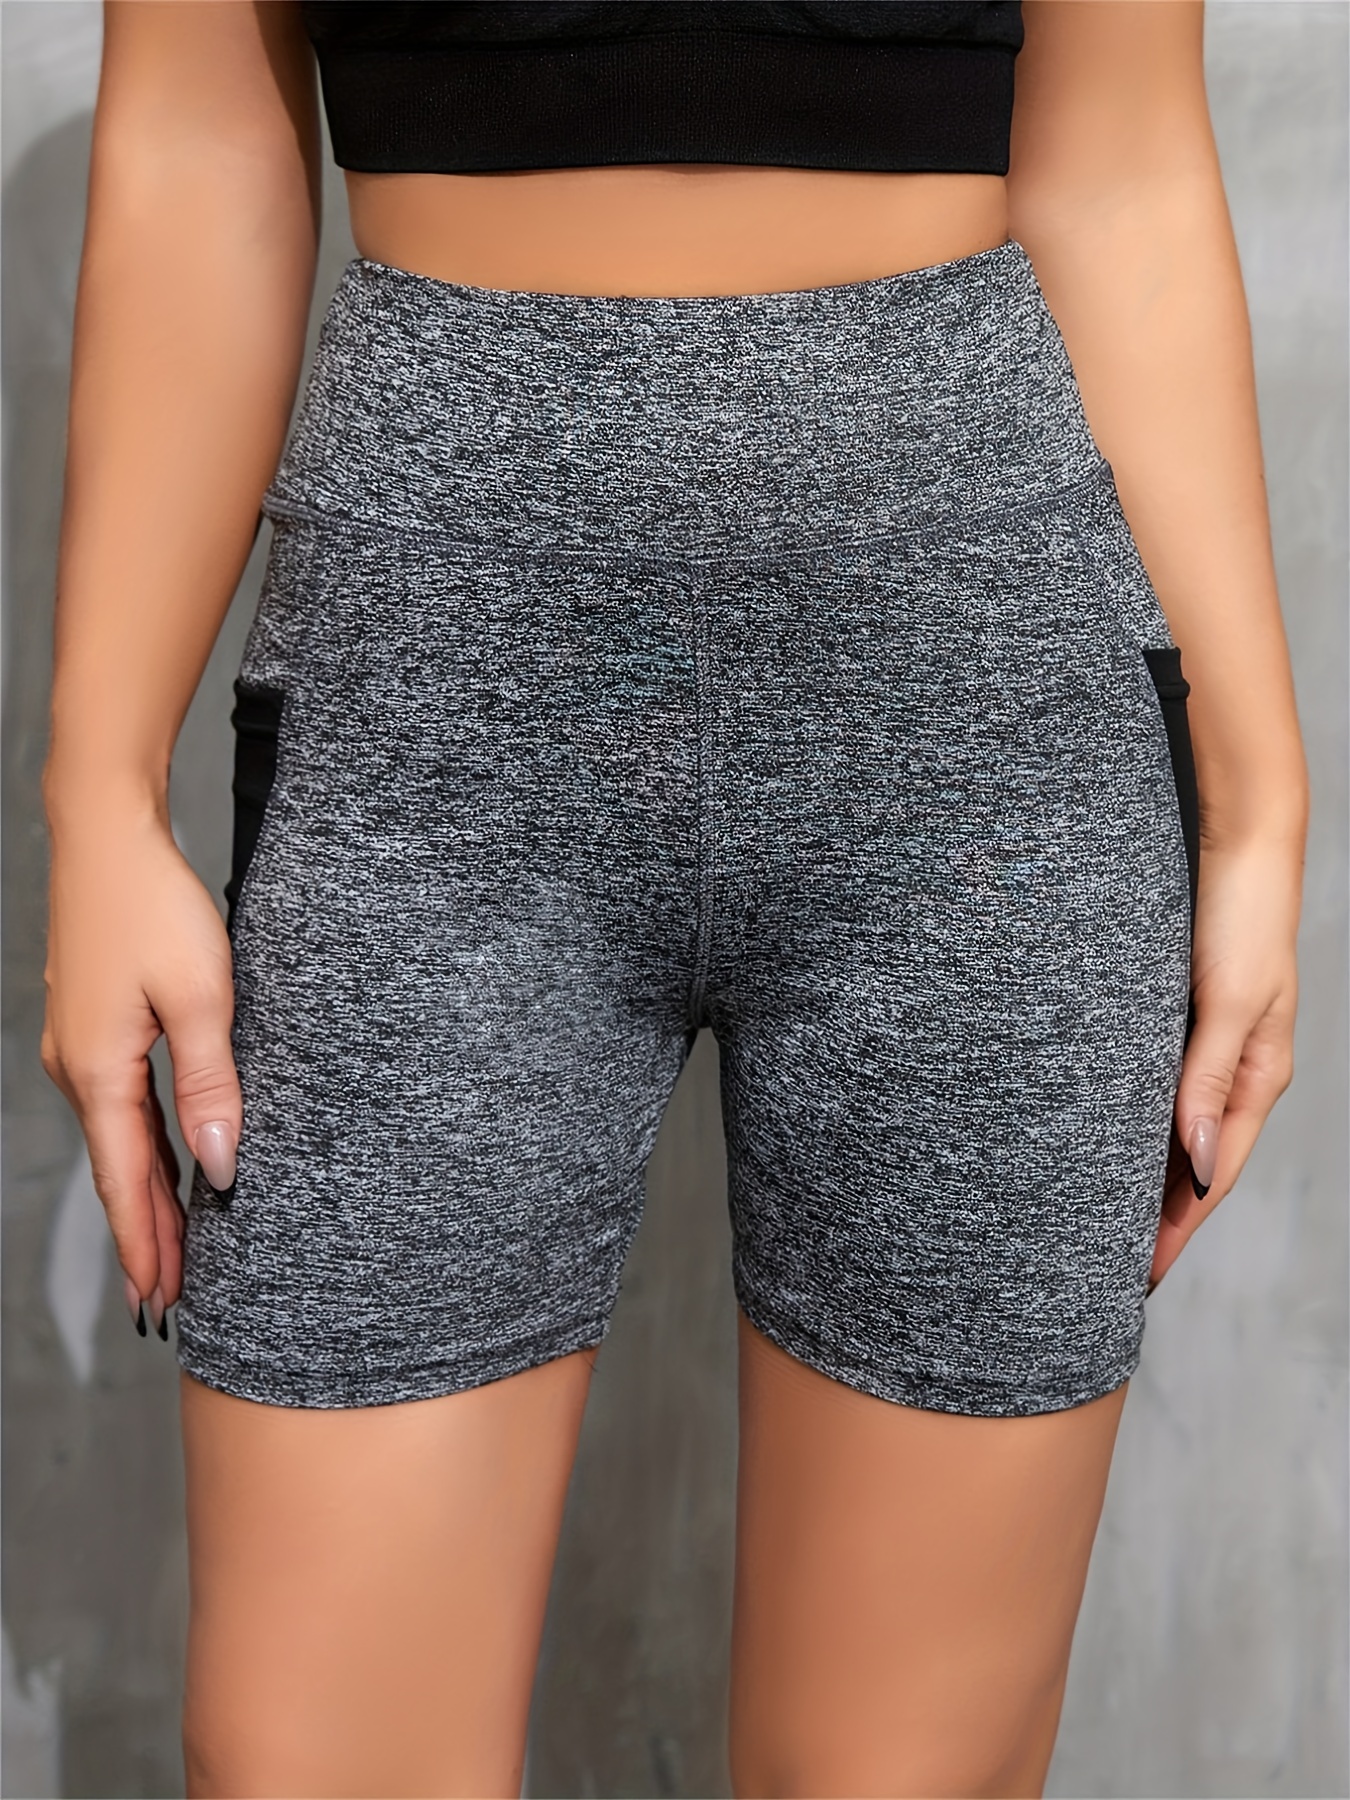 Pantalones cortos de LICRA sin costuras para mujer, mallas deportivas con  realce de glúteos para Yoga, correr, ciclismo, Fitness, cintura alta,  gimnasio - AliExpress